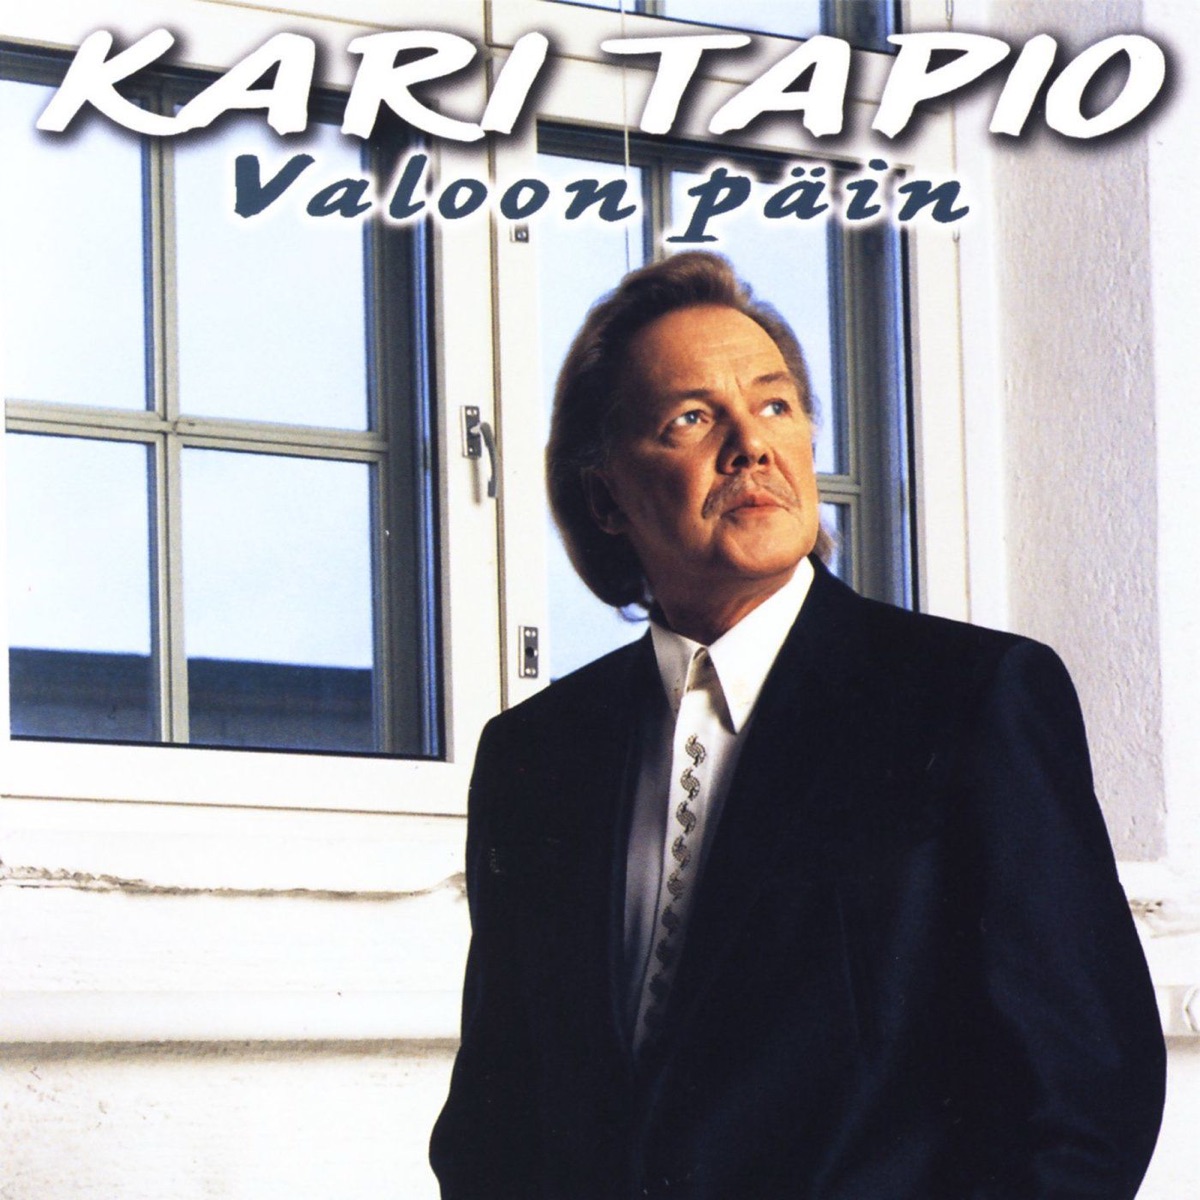 Kaikkien aikojen parhaat - 40 klassikkoa, Vol. 2 by Kari Tapio on Apple  Music